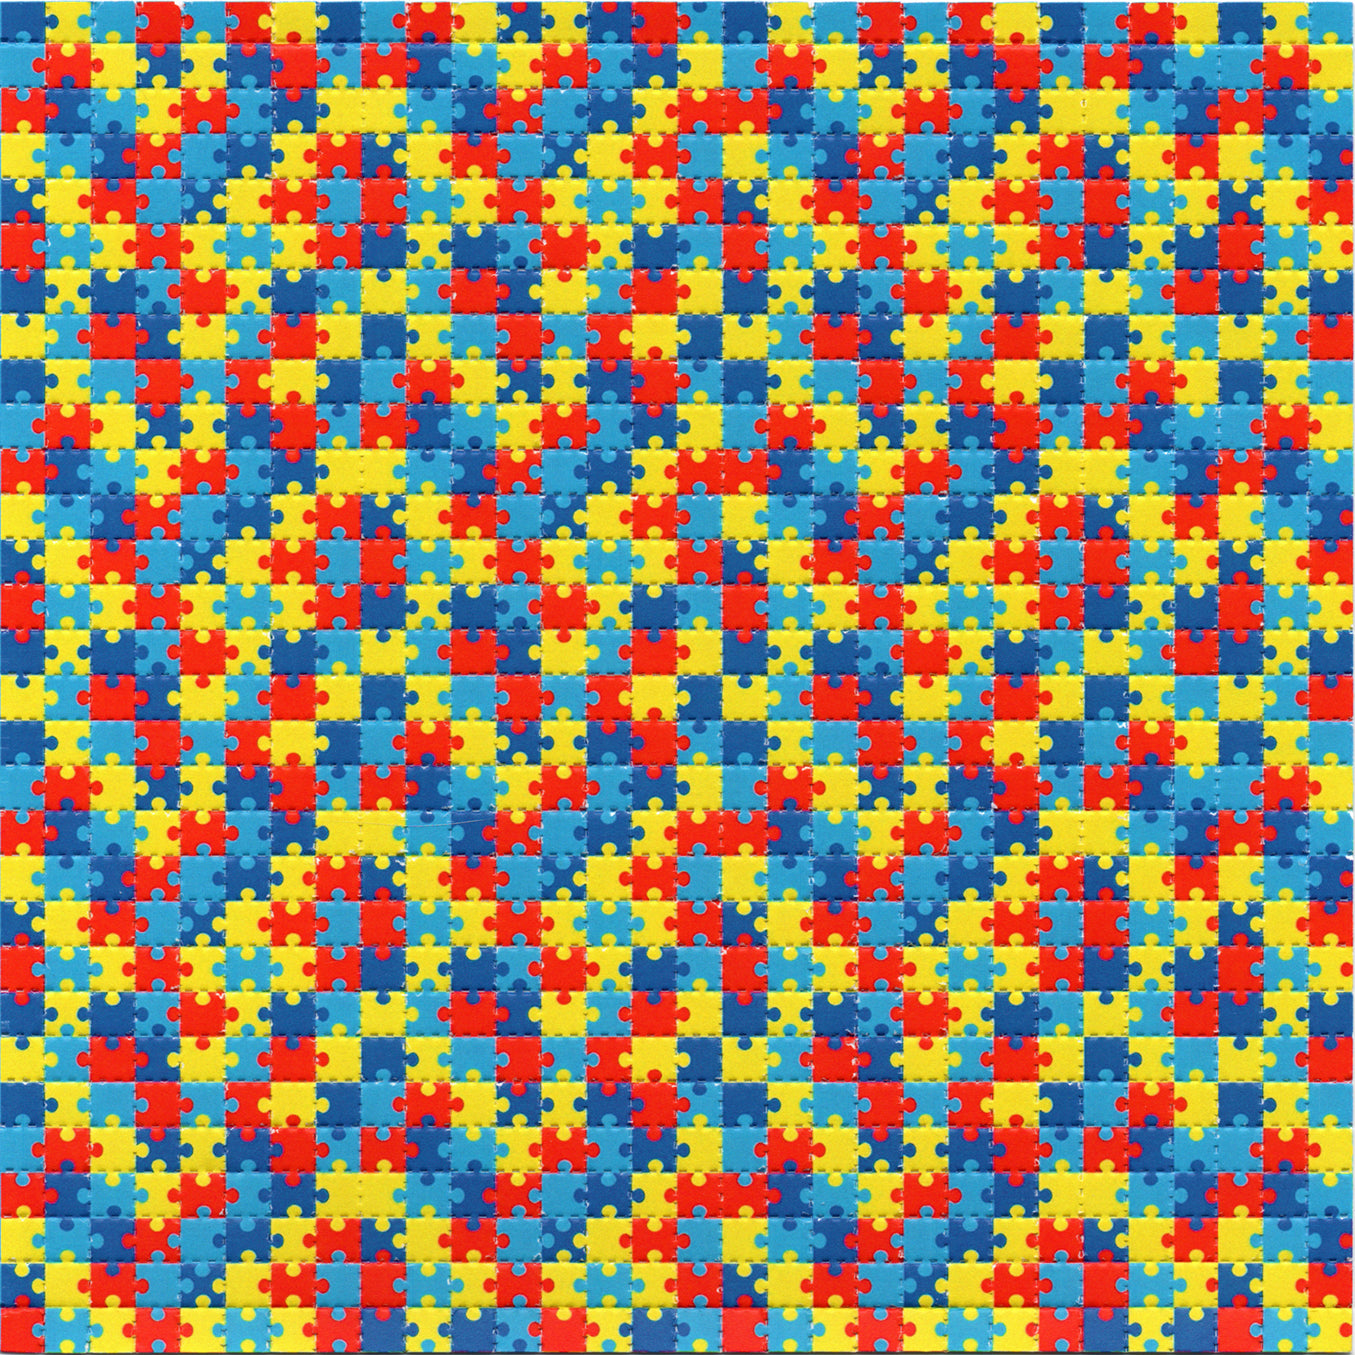 Jigsaw Puzzle LSD blotter art print